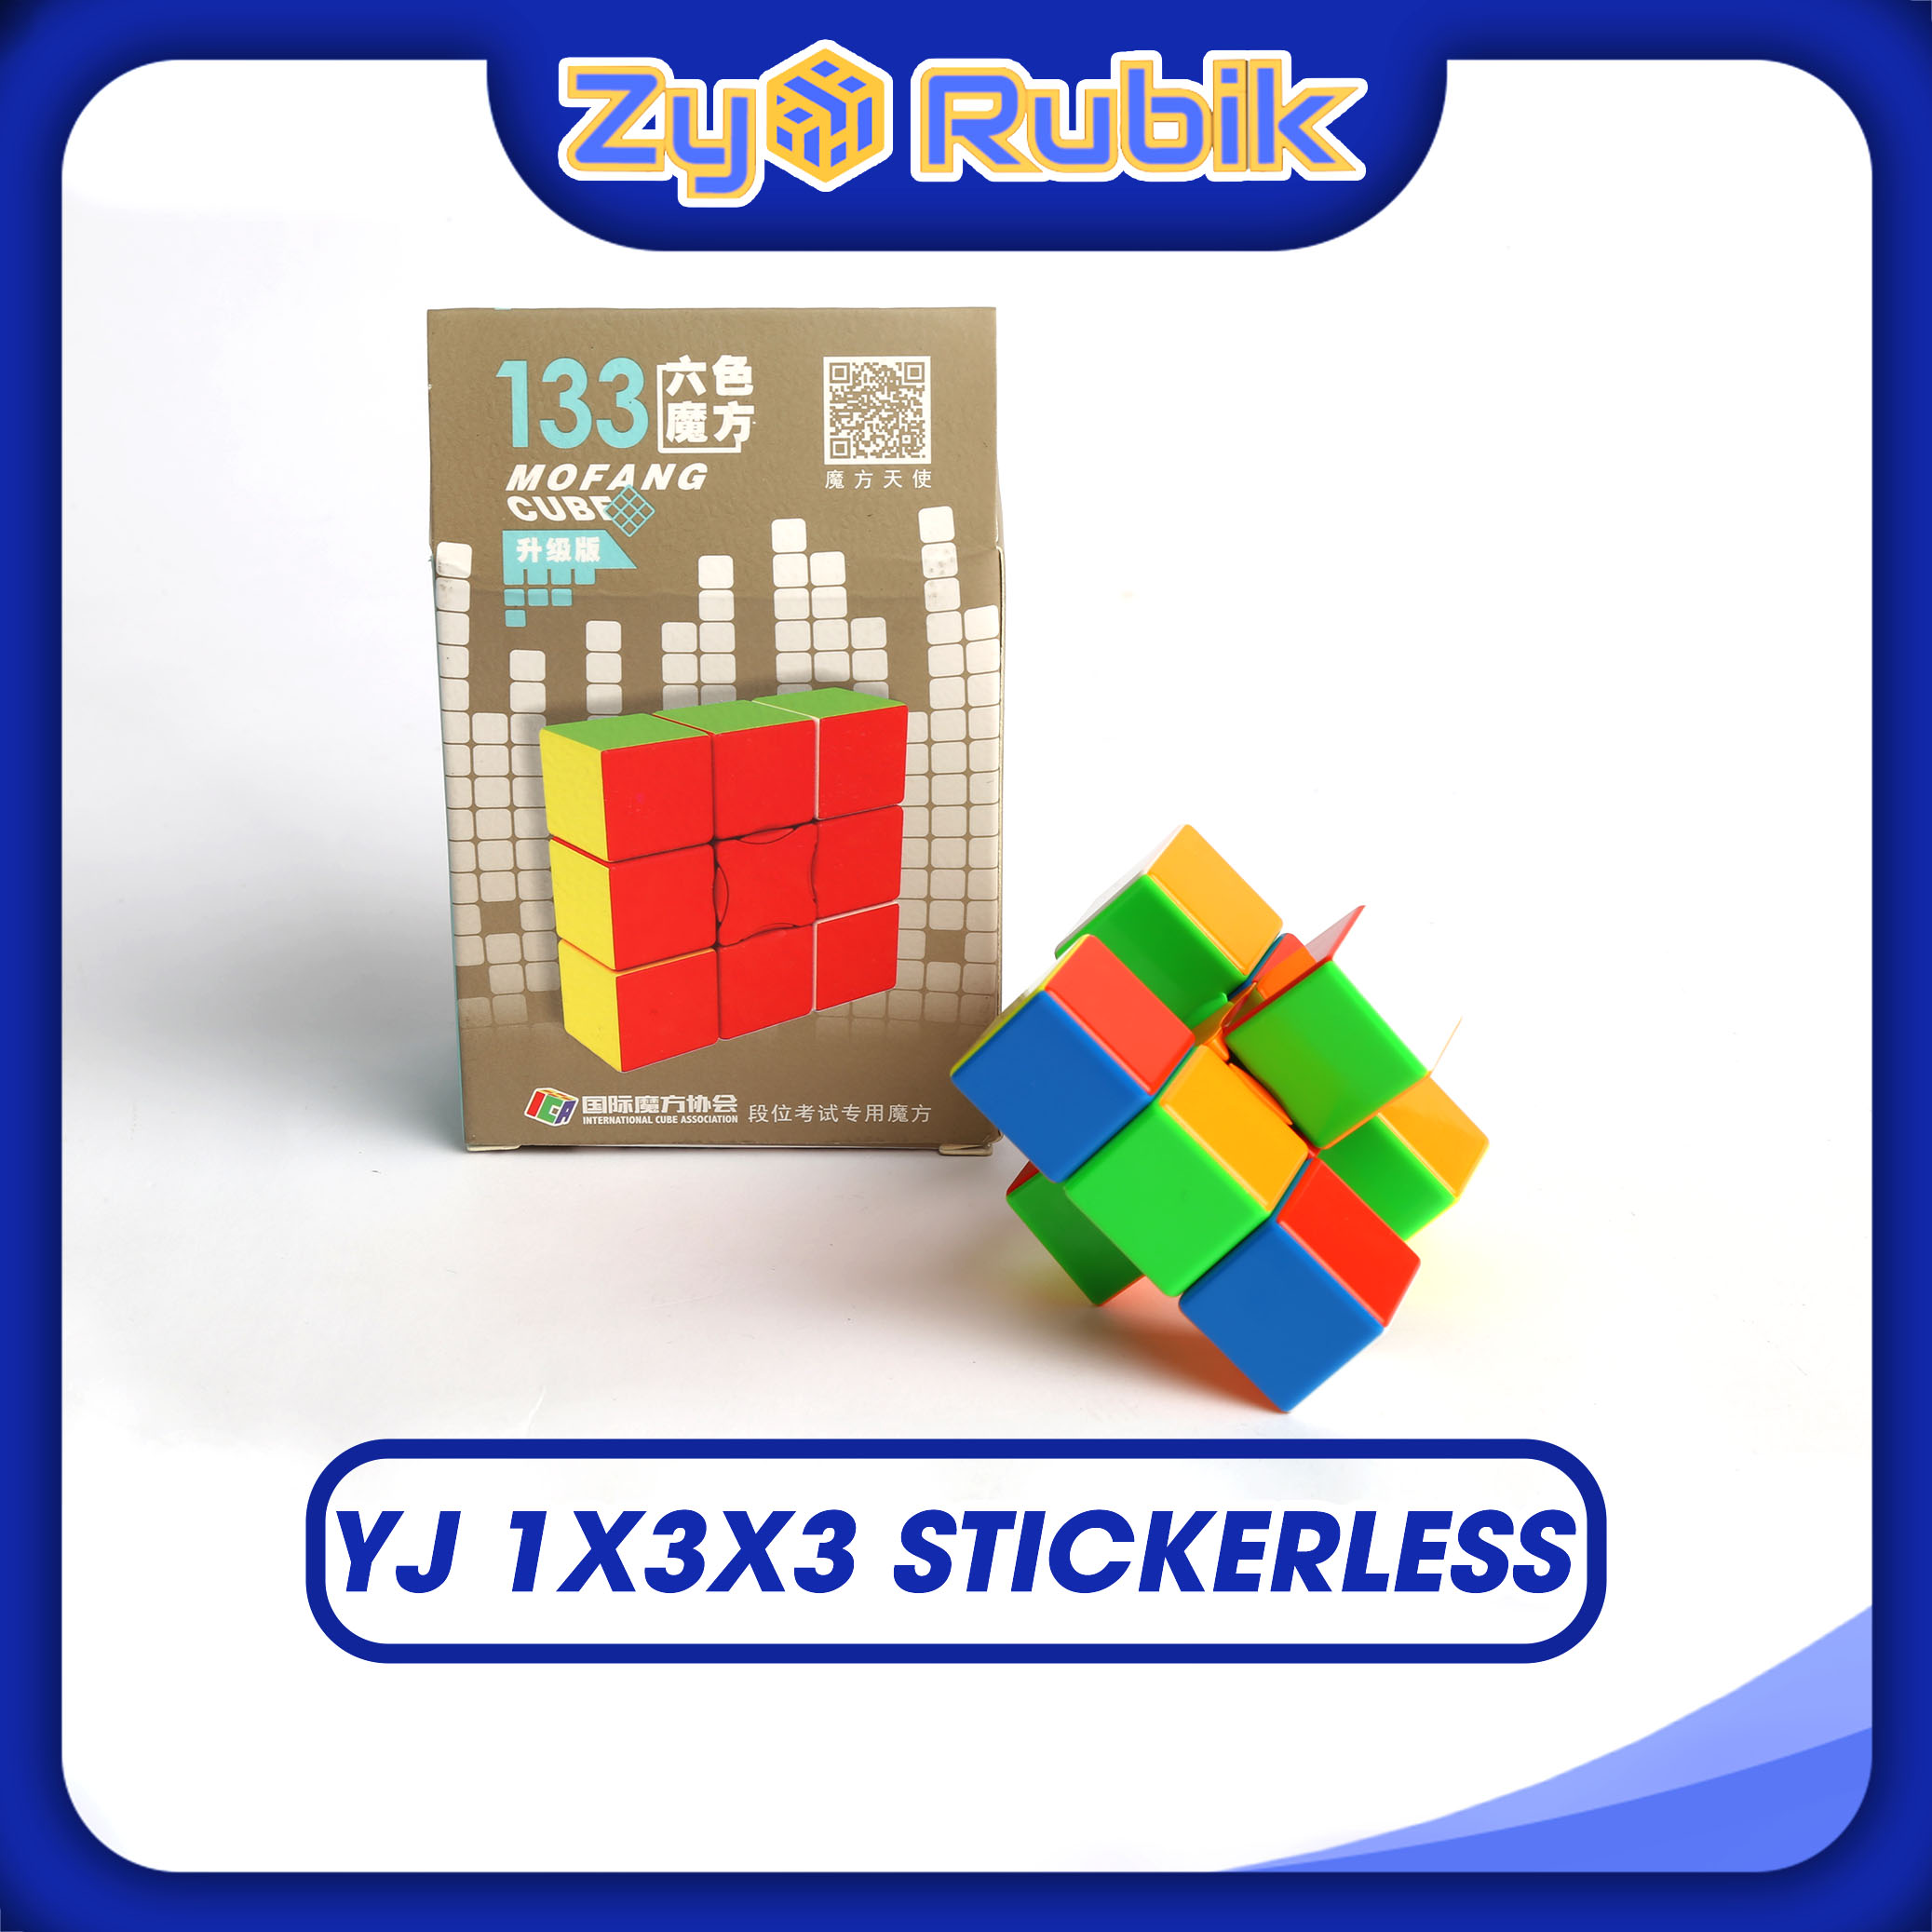 Rubik Biến Thể 1x3x3 YJ YongJun Stickerless - Rubik 1x3x3 YJ - ZyO Rubik